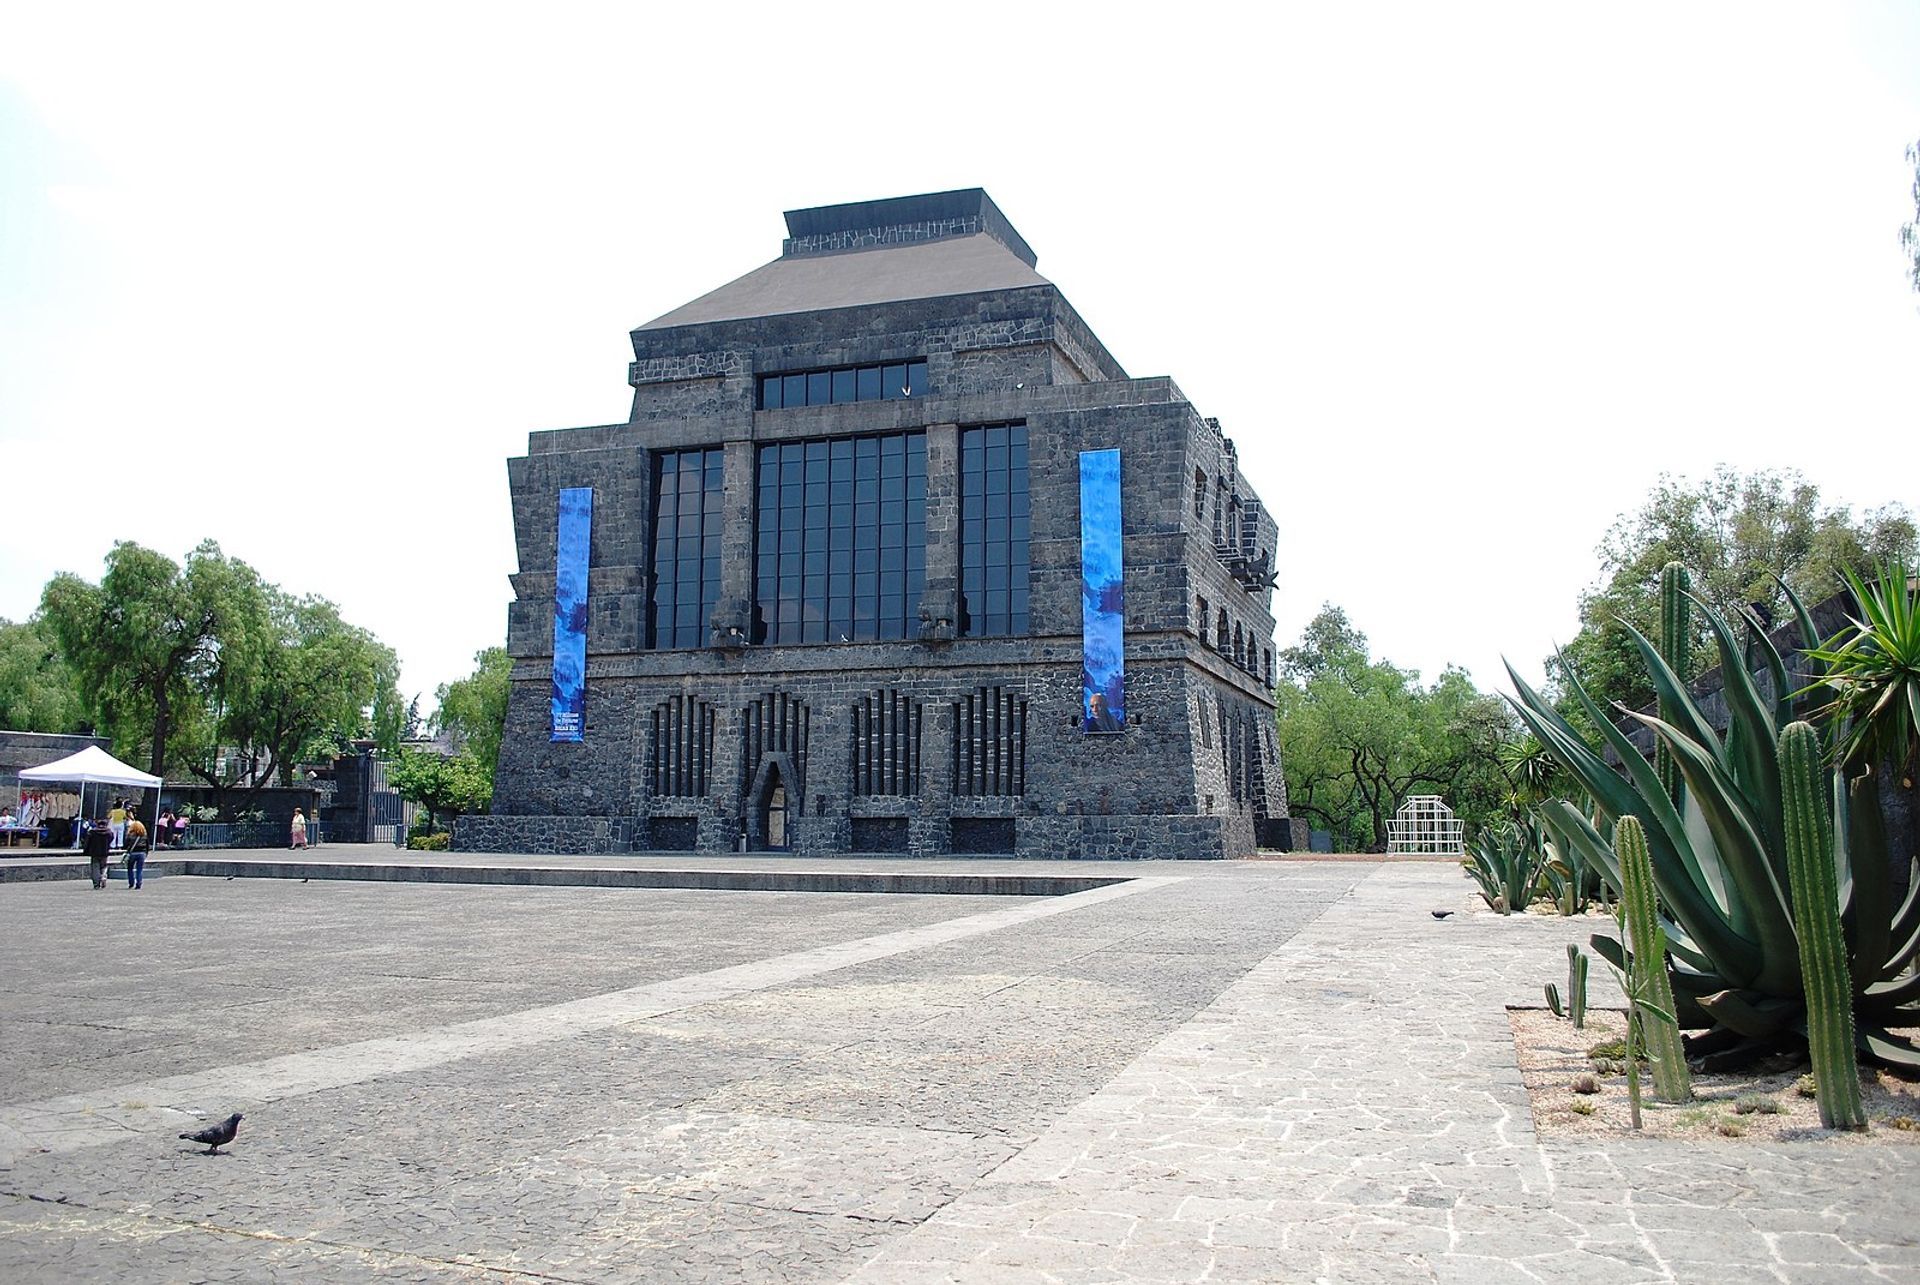 הבניין הראשי של מוזיאון Anahuacalli 

צילום: אלחנדרו לינארס גרסיה